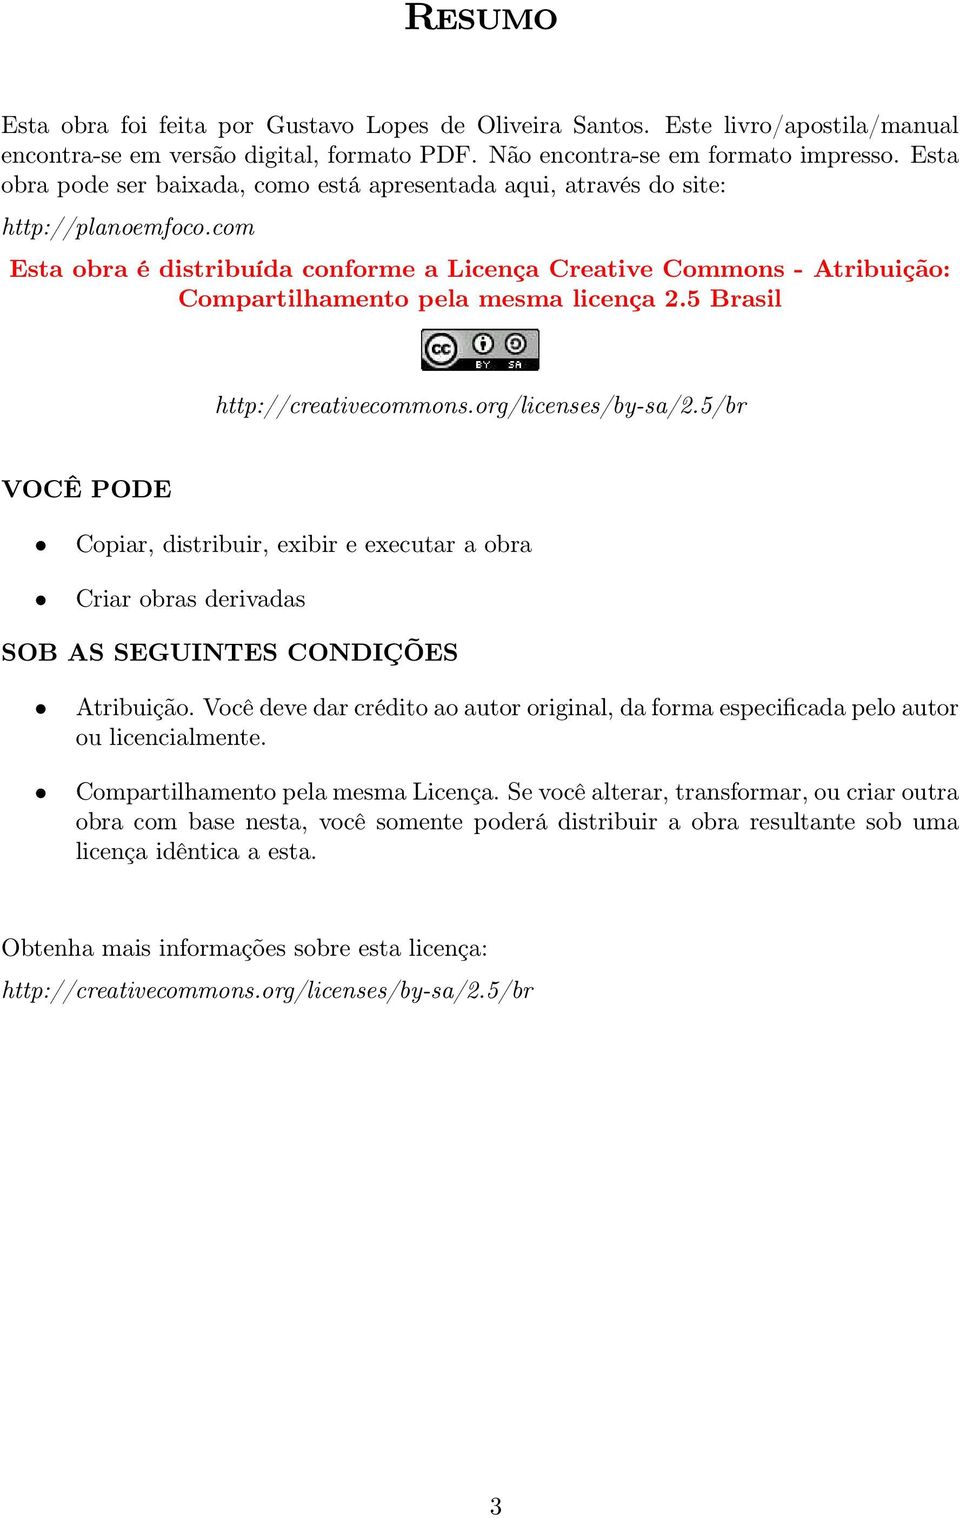 com Esta obra é distribuída conforme a Licença Creative Commons - Atribuição: Compartilhamento pela mesma licença 2.5 Brasil http://creativecommons.org/licenses/by-sa/2.